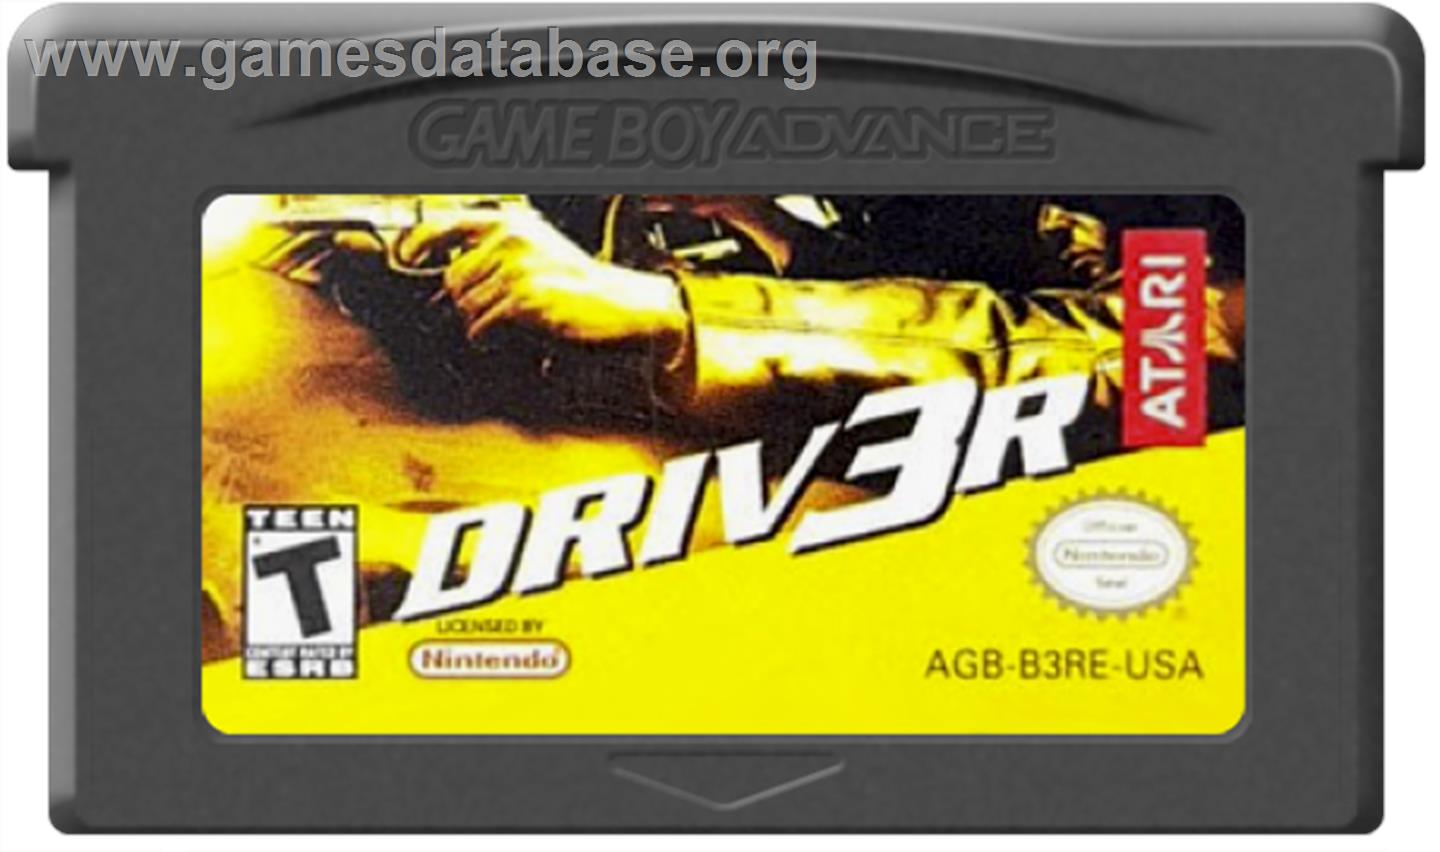 Driv3r 2 - Nintendo Game Boy Advance - Artwork - Cartridge